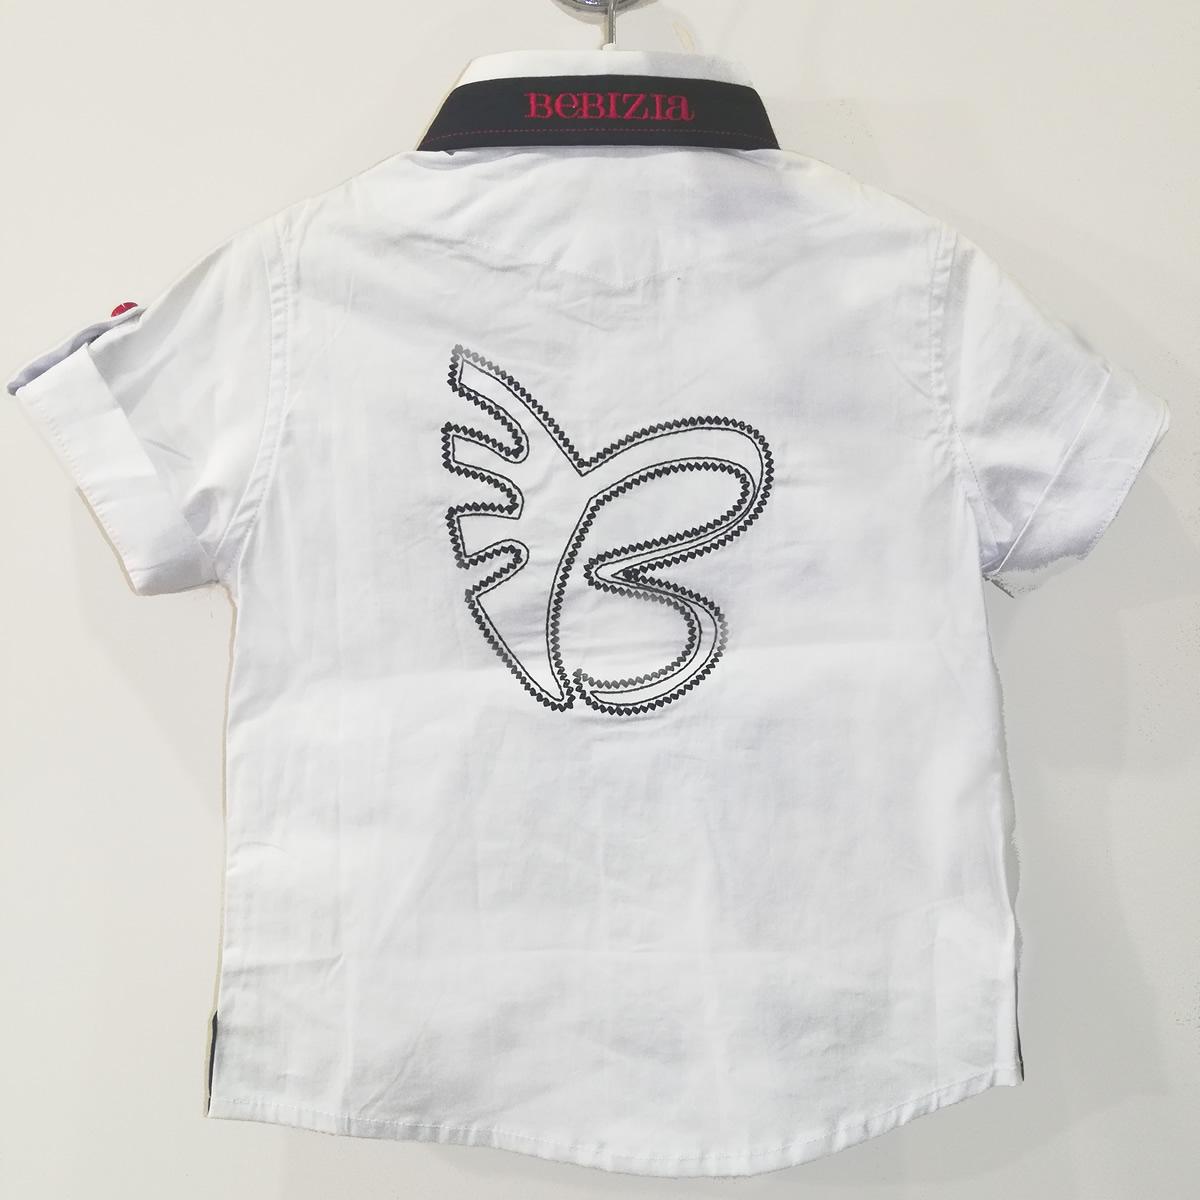 Детская  рубашка для мальчика с коротким рукавом, белая (3037), Bebizia